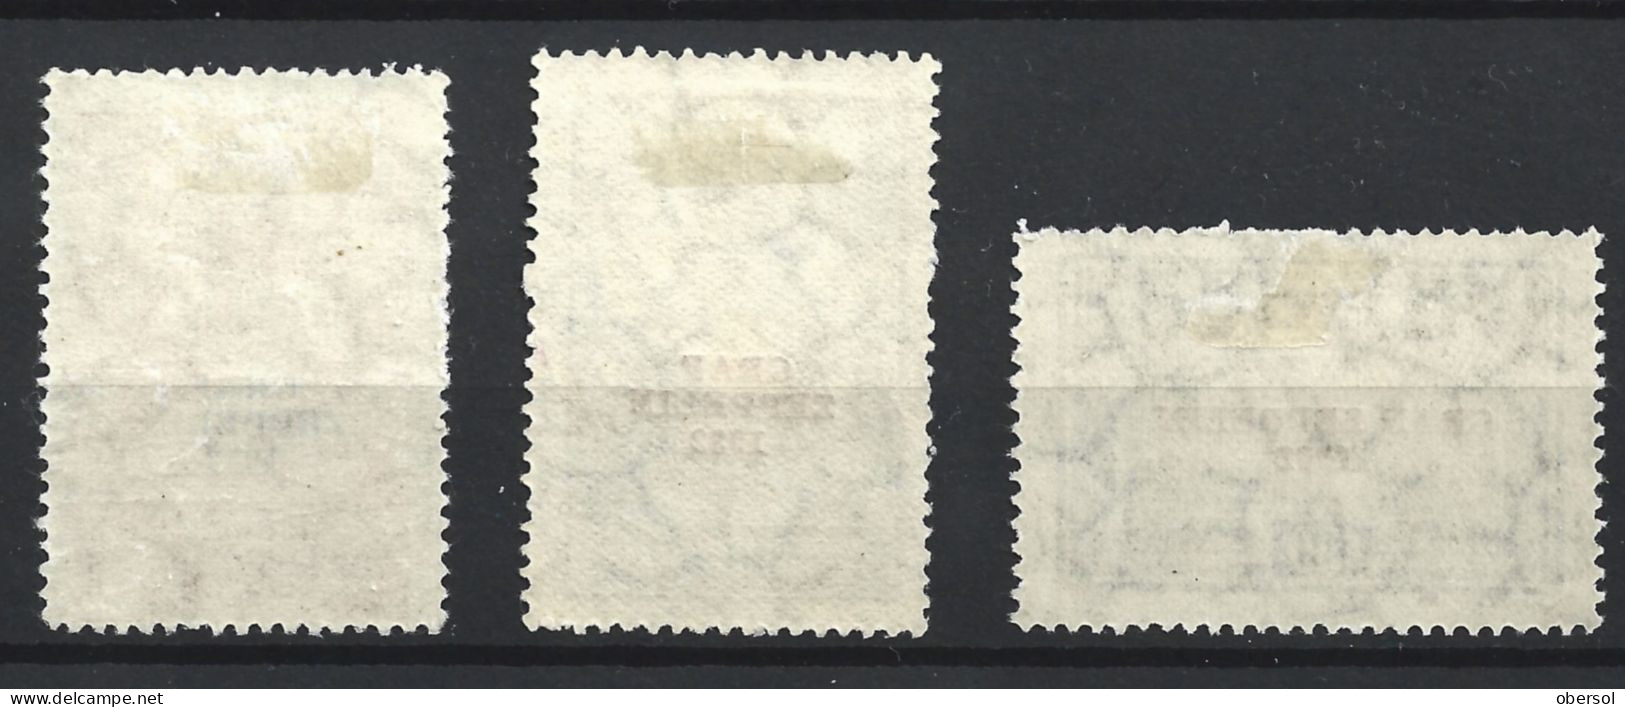 Argentina 1932 Graf Zeppelin Overprint Complete Set MH Stamps ** HCV ** - Ongebruikt